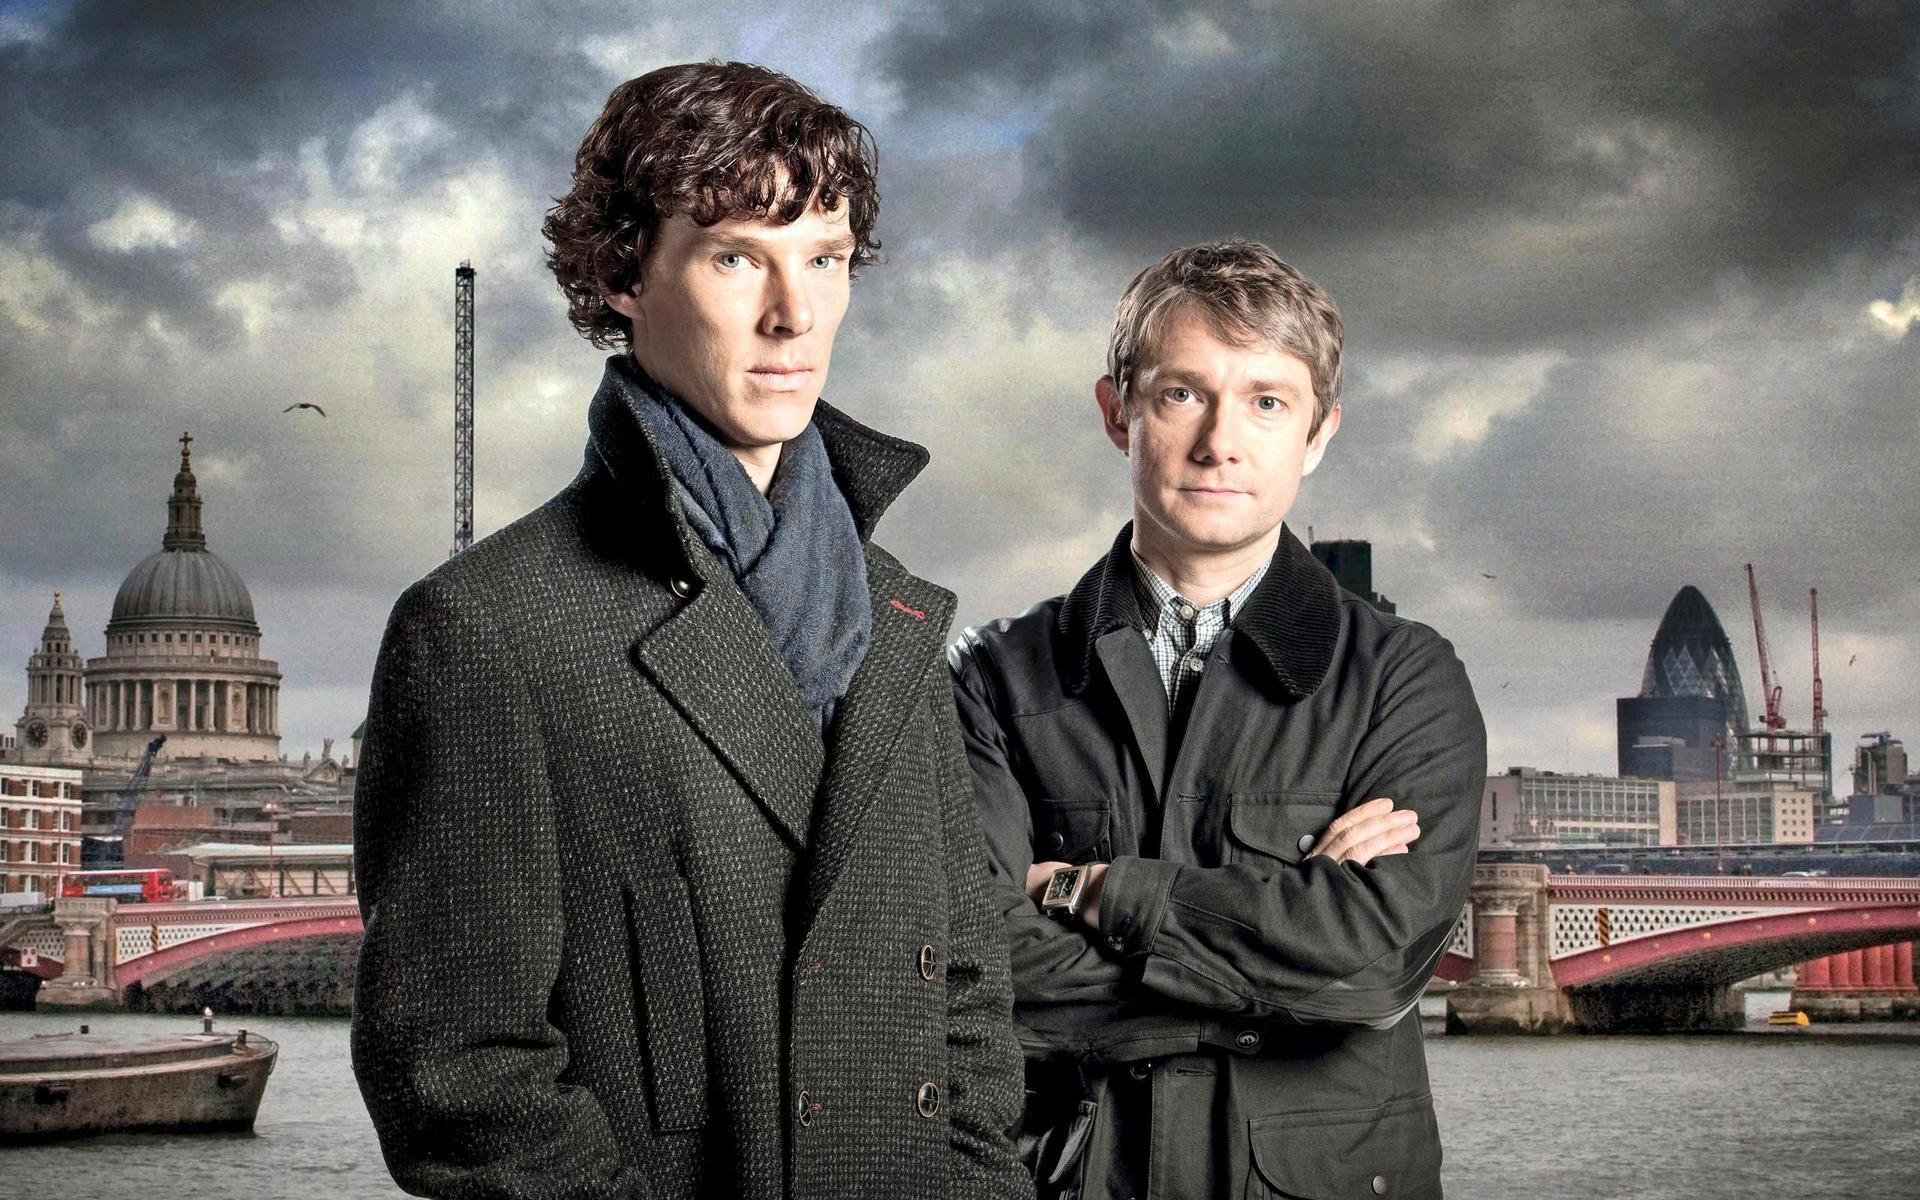 2010 kom den populära serien ”Sherlock” från BBC som visades i Sverige på SVT i flera säsonger. I huvudrollerna syntes Benedict Cumberbatch som Sherlock Holmes och Martin Freeman som Dr. Watson.